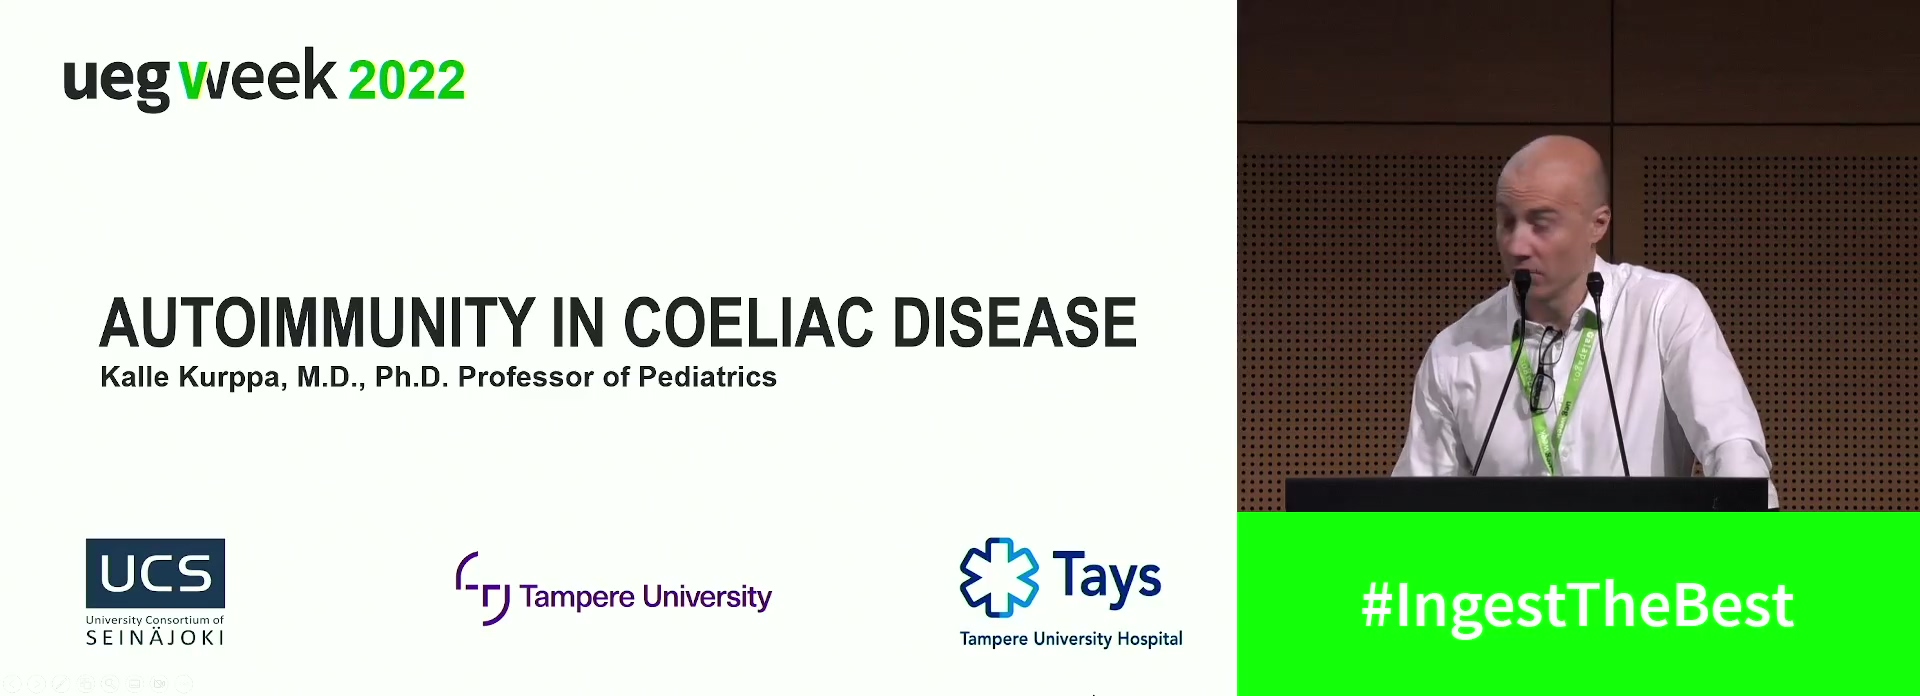 Autoimmunity in coeliac disease